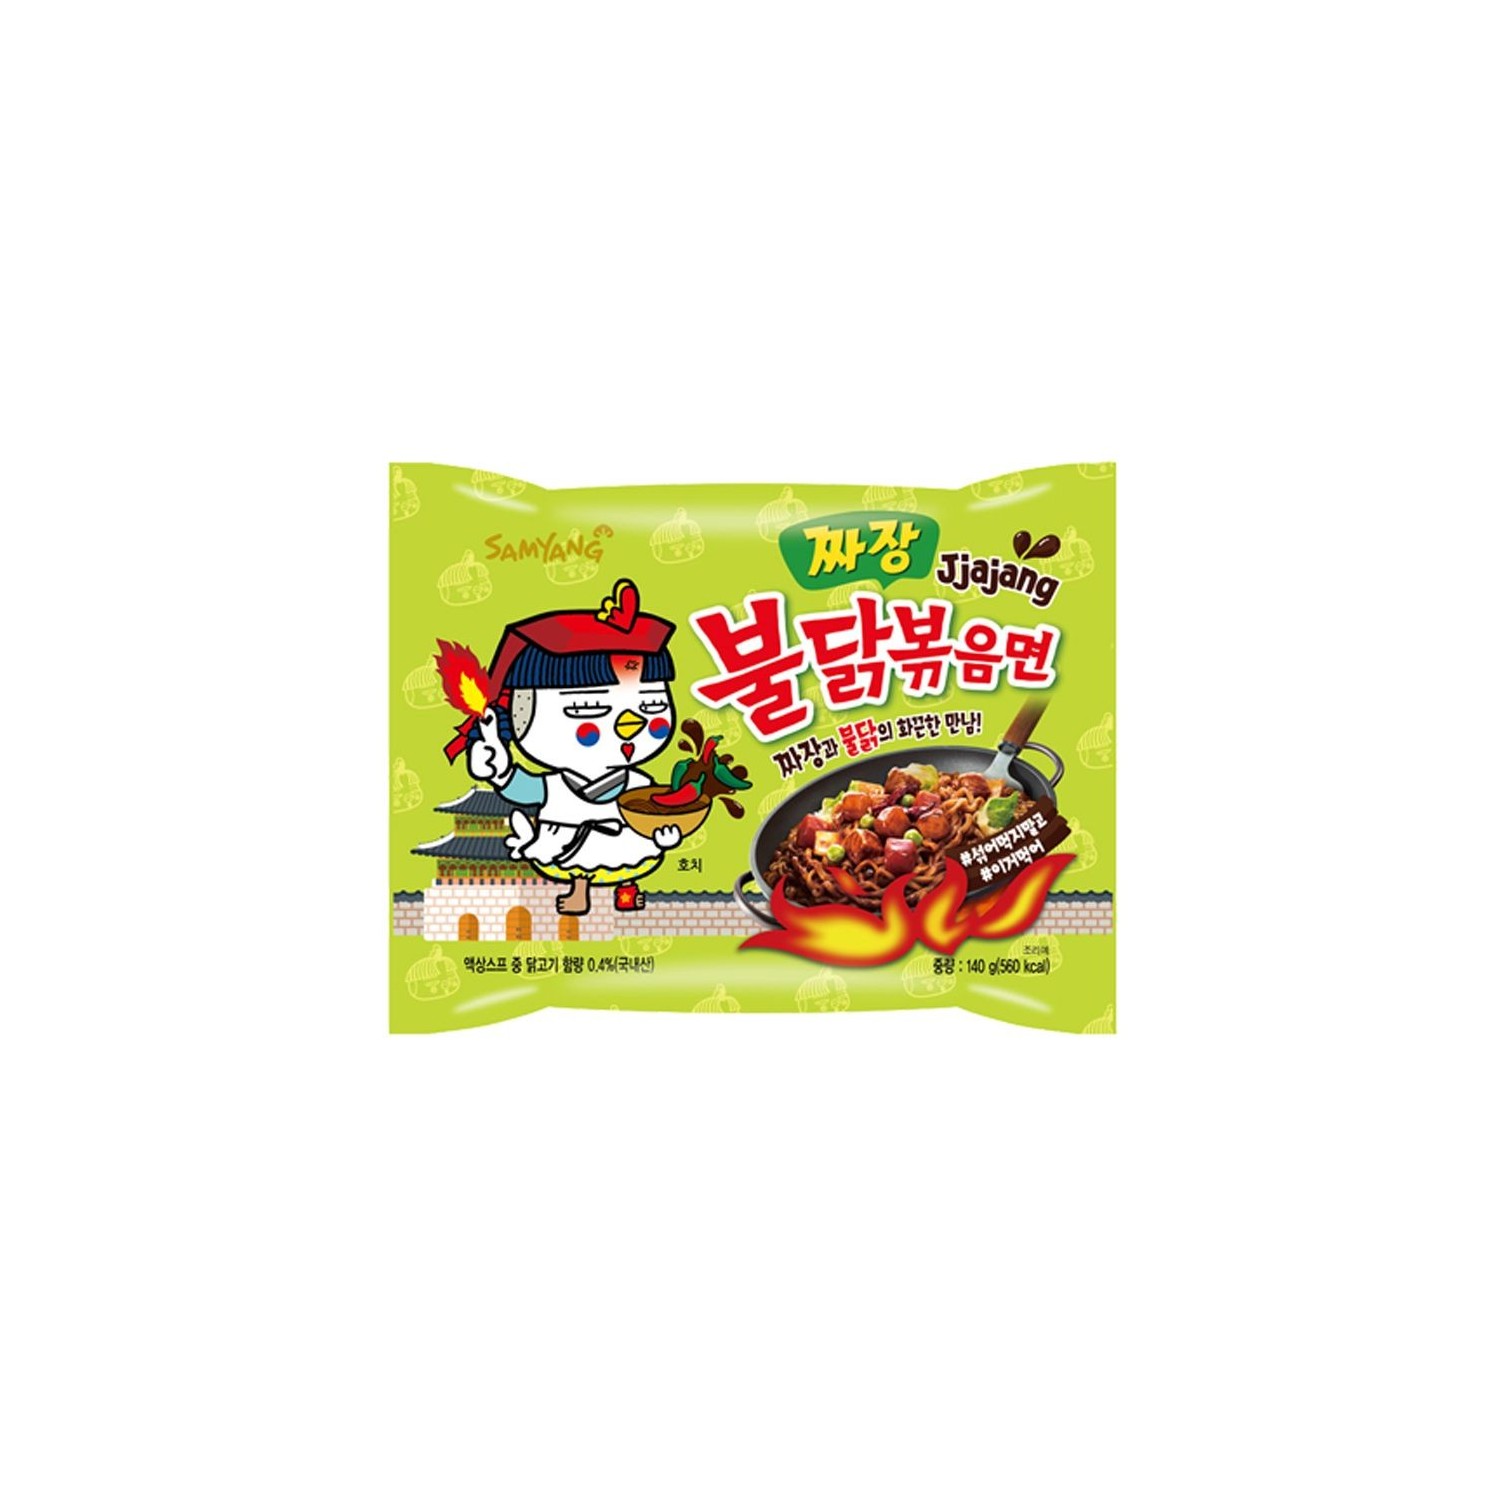 Samyang Noodles Hot Chicken Jjajang Ramen 140g Instant Korean Noodles